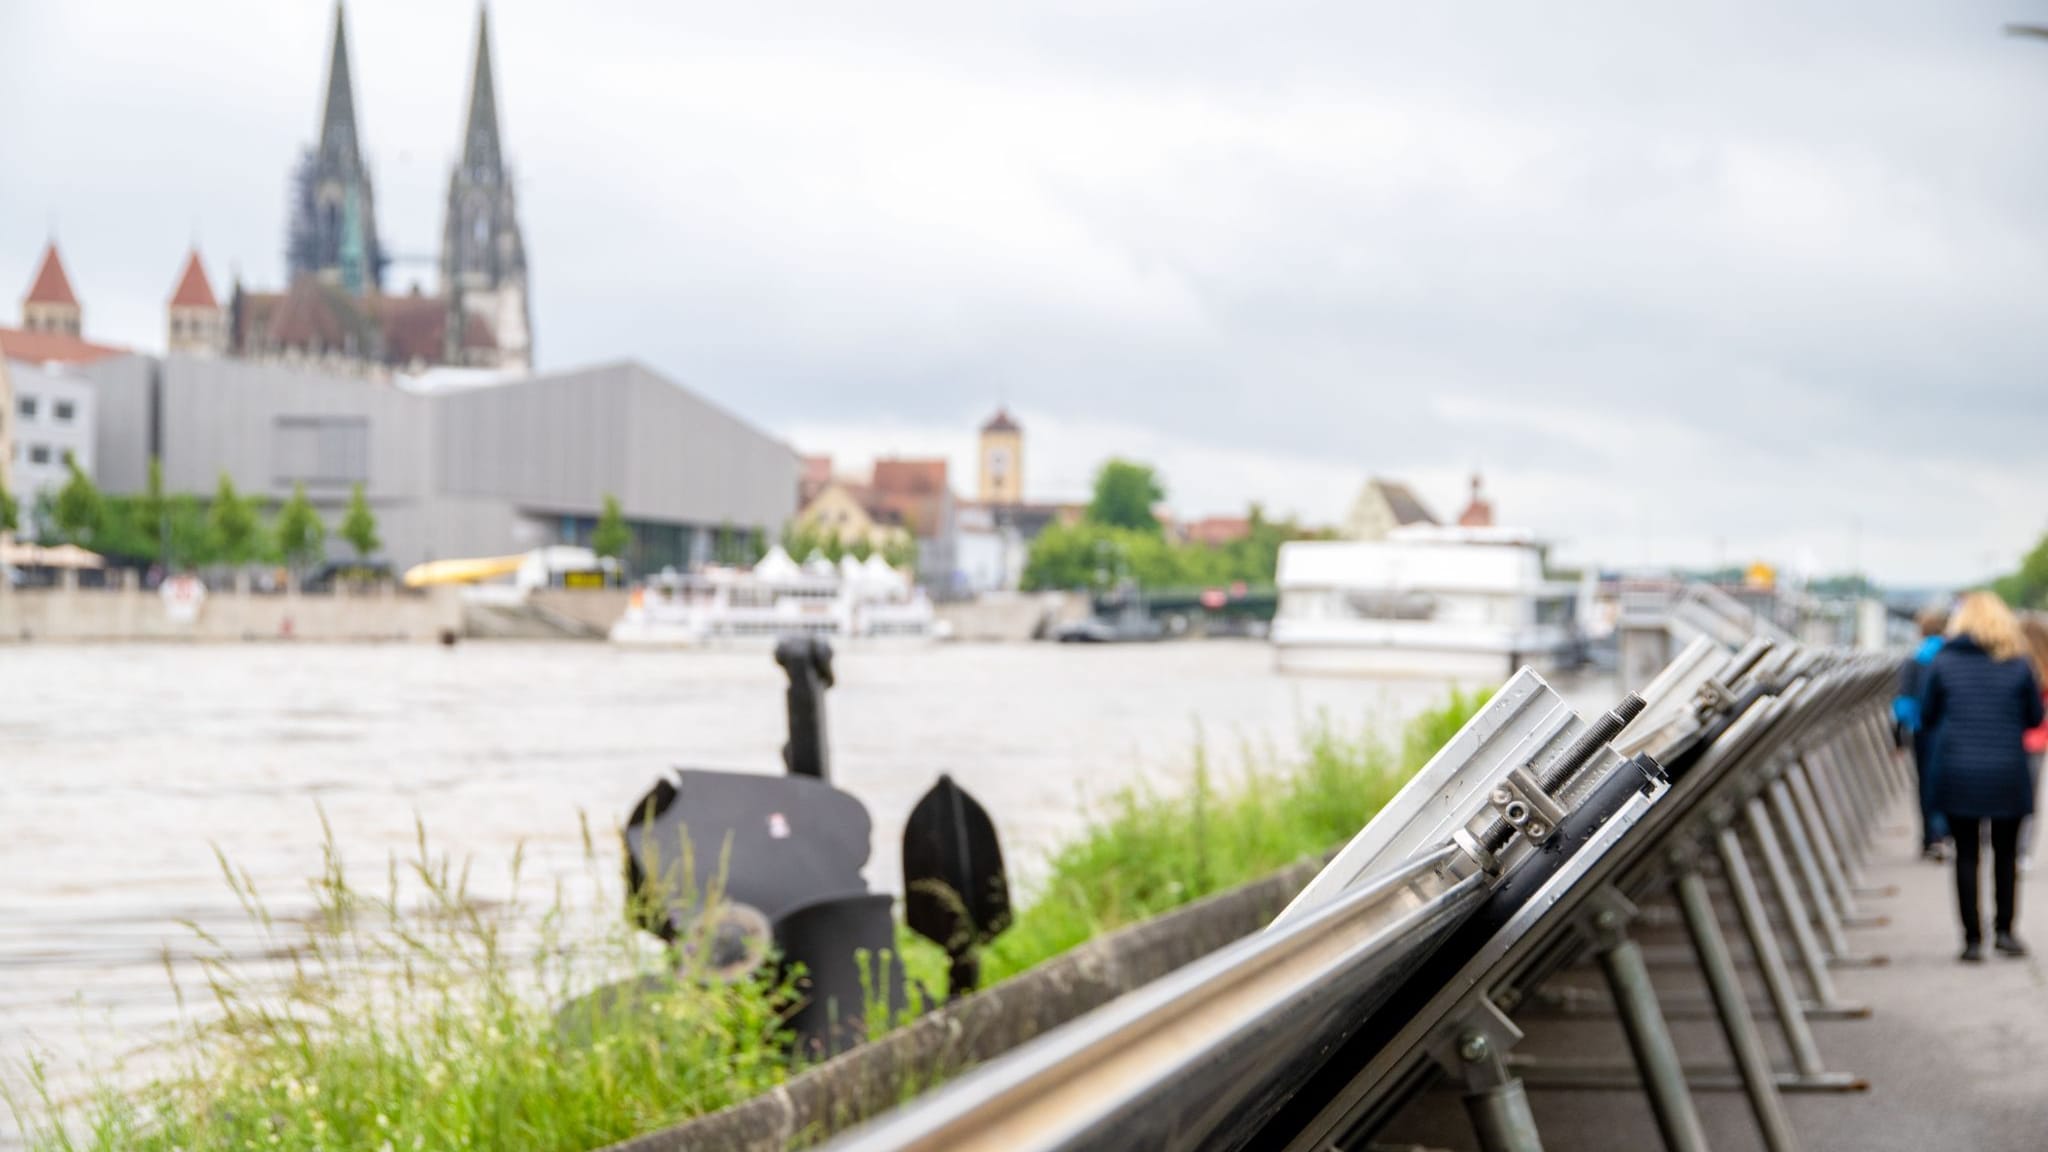 Mobile Hochwasserschutzwände sichern ein Ufer der Donau in Regensburg: am Montagmorgen hat die Stadt den Katastrophenfall ausgerufen.